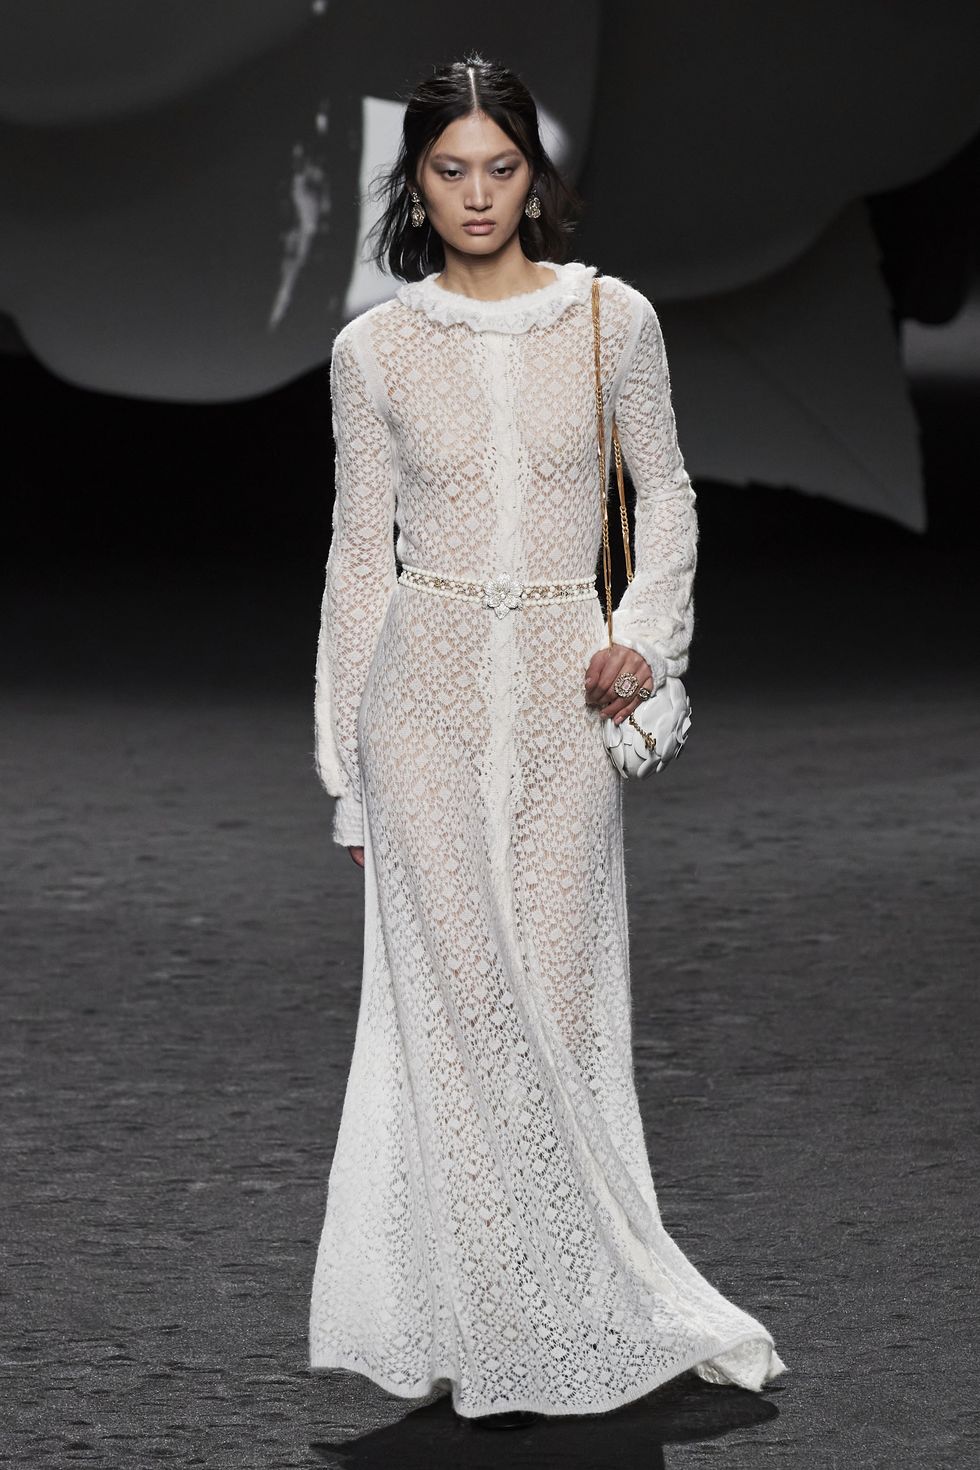 Penélope Cruz, impresionante con el vestido ajustado transparente más bonito